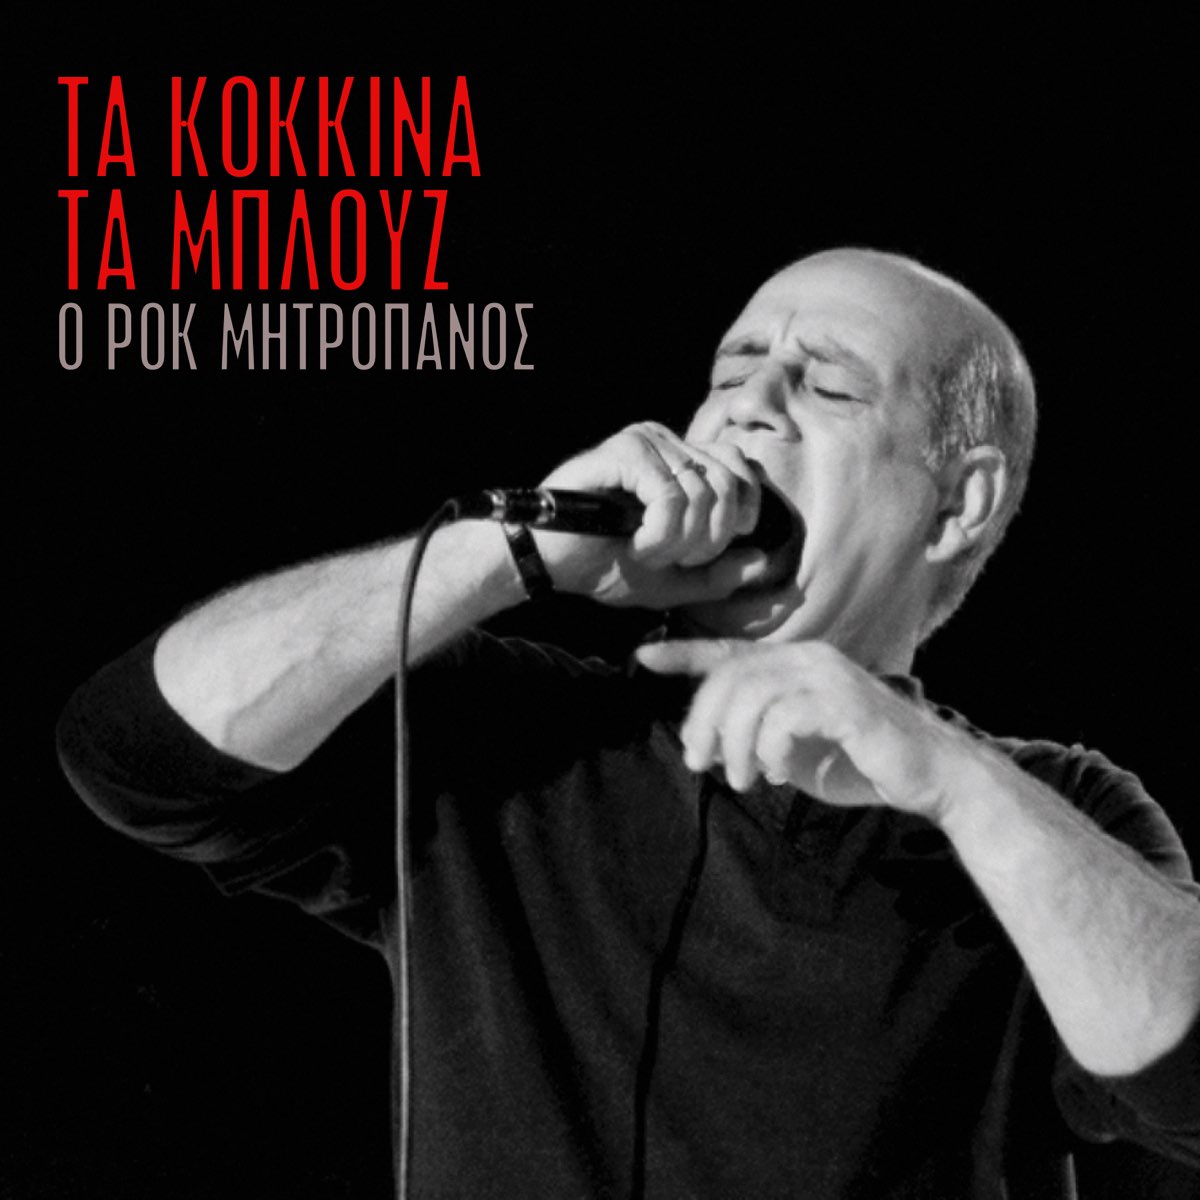 Ta Kokkina ta Blouz - Άλμπουμ από Δημήτρης Μητροπάνος - Apple Music